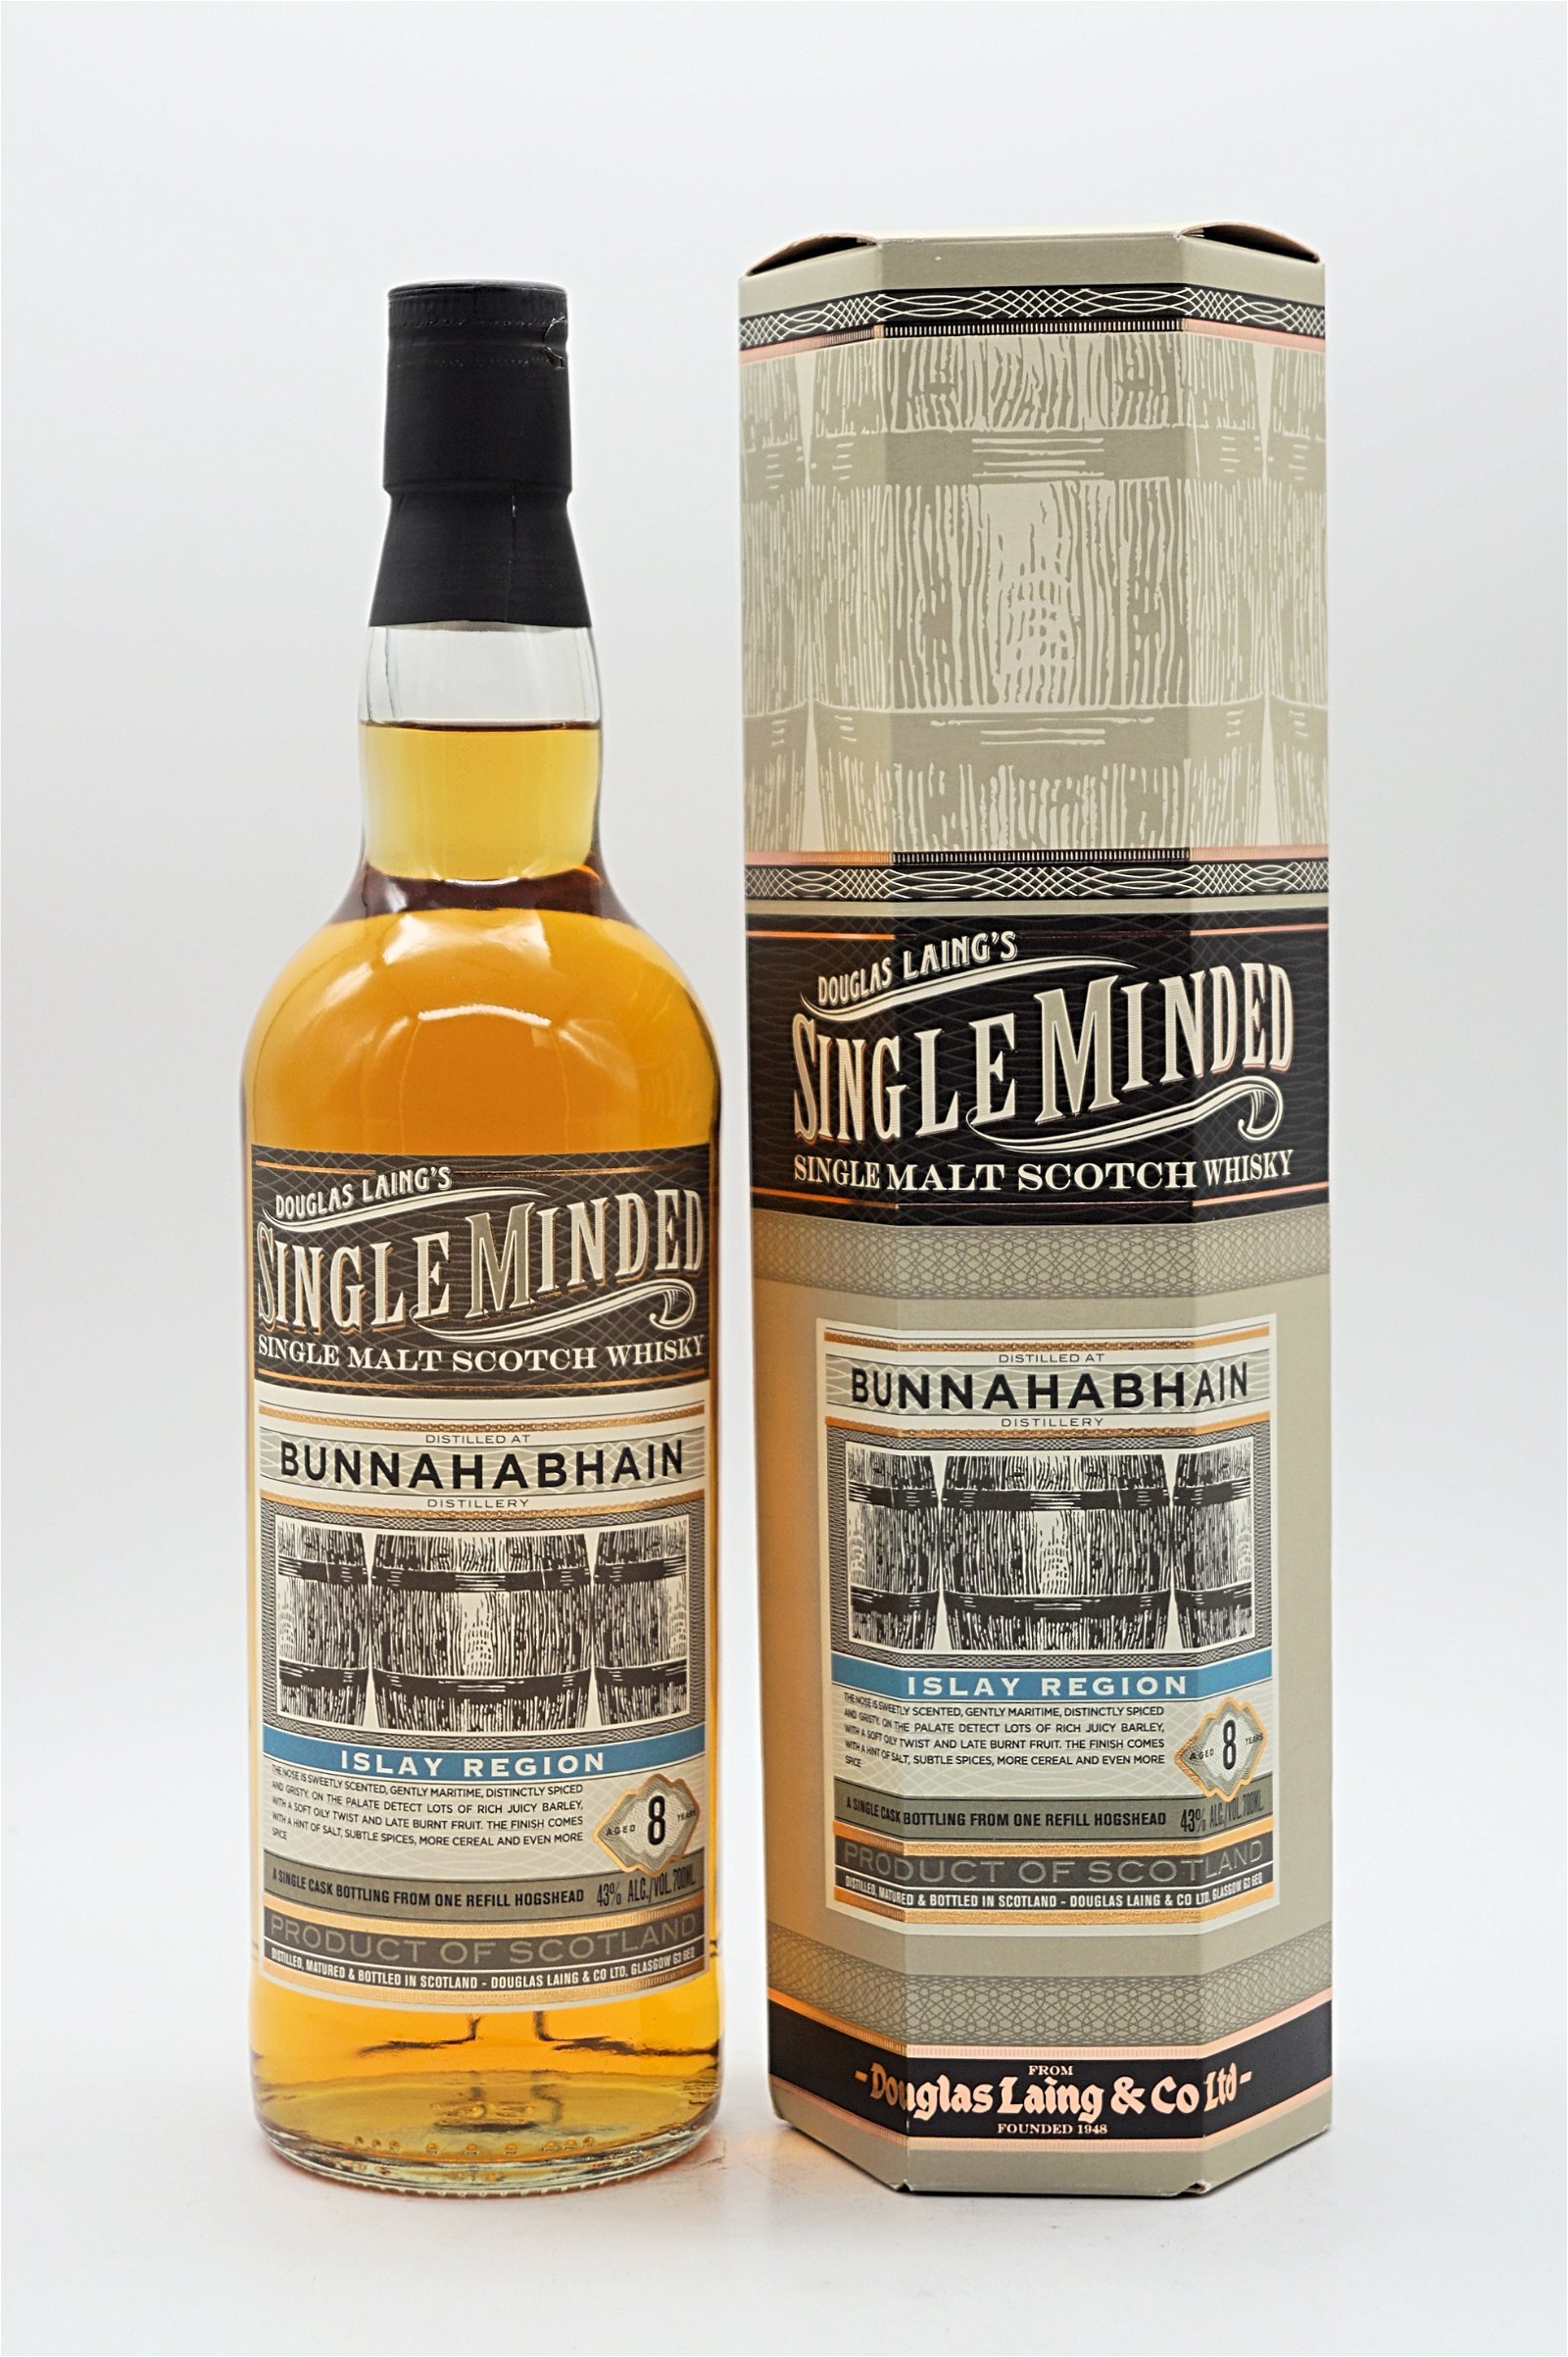 Douglas Laing Single Minded Bunnahabhain 8 Jahre Single Malt Scotch Whisky